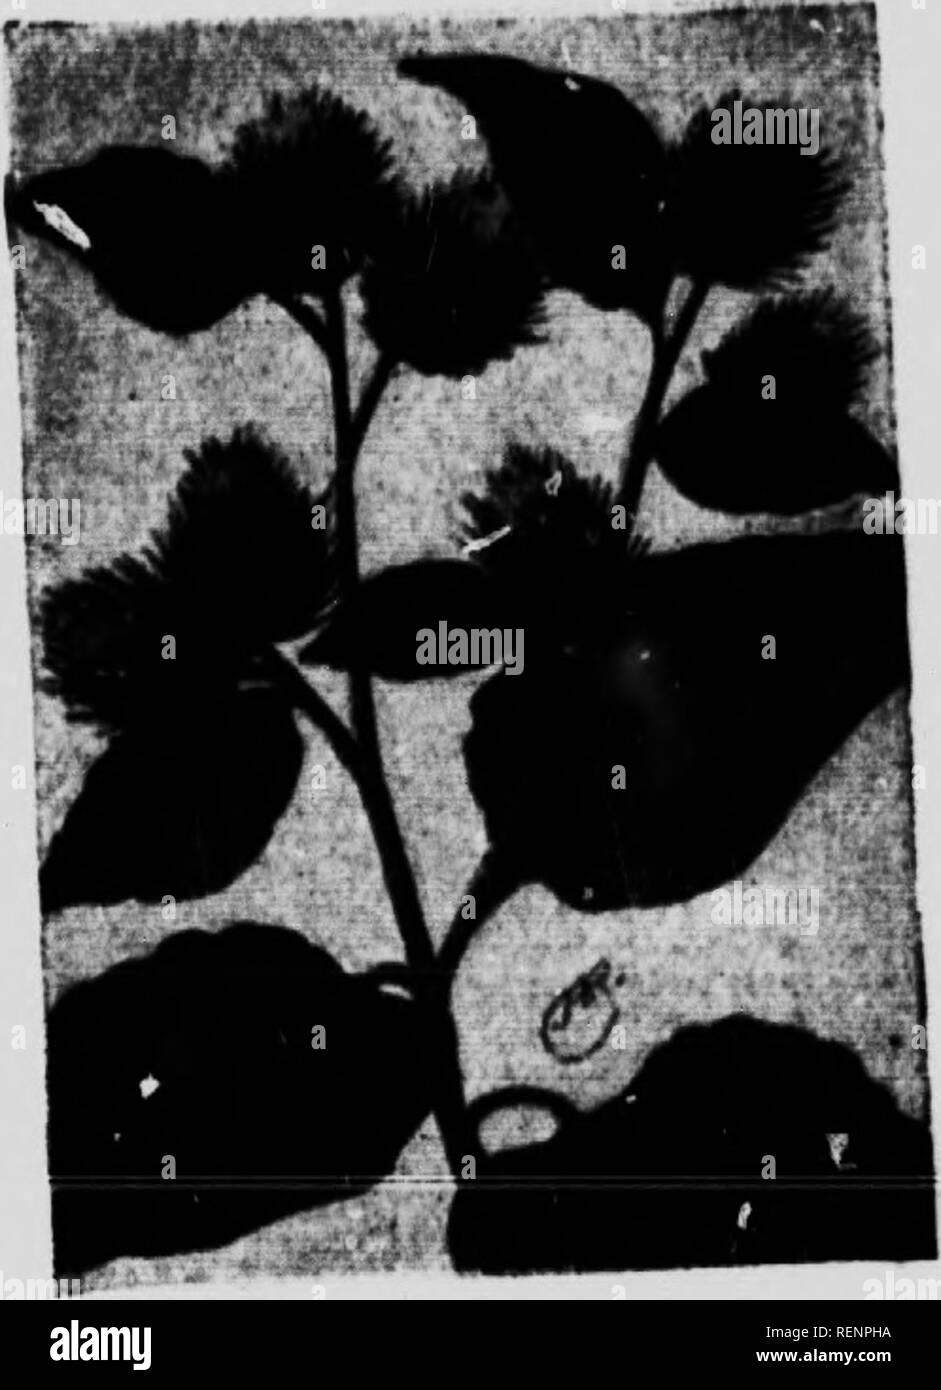 . Blume [microform]: Wilde Blumen östlich der Rocky Mountains. Blumen; Fleurs; Botanique; Botanik. RiKiKHK (Arctium minus) (Khiopkan) U u v.. rv, ",", ".. n wa.t.- I^'RT'"' "Ir-J'Z^t^ll tlu. . Mlf;.. s von Wäldern. Tl ... Werk ist "Itwi""&gt;" [""'': [. .,, Ir-hi-li. Die niedrig. T Brote aiv sehr Lai};." oltrn nioi. a, a ot in Länge, Herz-Form. l. . L... p (.'.Een.. nilTy ahove Geädert. Gräulich., e, u. atl. "- '-;;;;;;;;';";";;;;;;;;"!^^ wolle, dass e., Vers. nder Oberflächen, l''P'''! ^ sind kleiner, mehr länglich in der Form und weniger dicht wooii&gt; Ddie lualersides. T Stockfoto